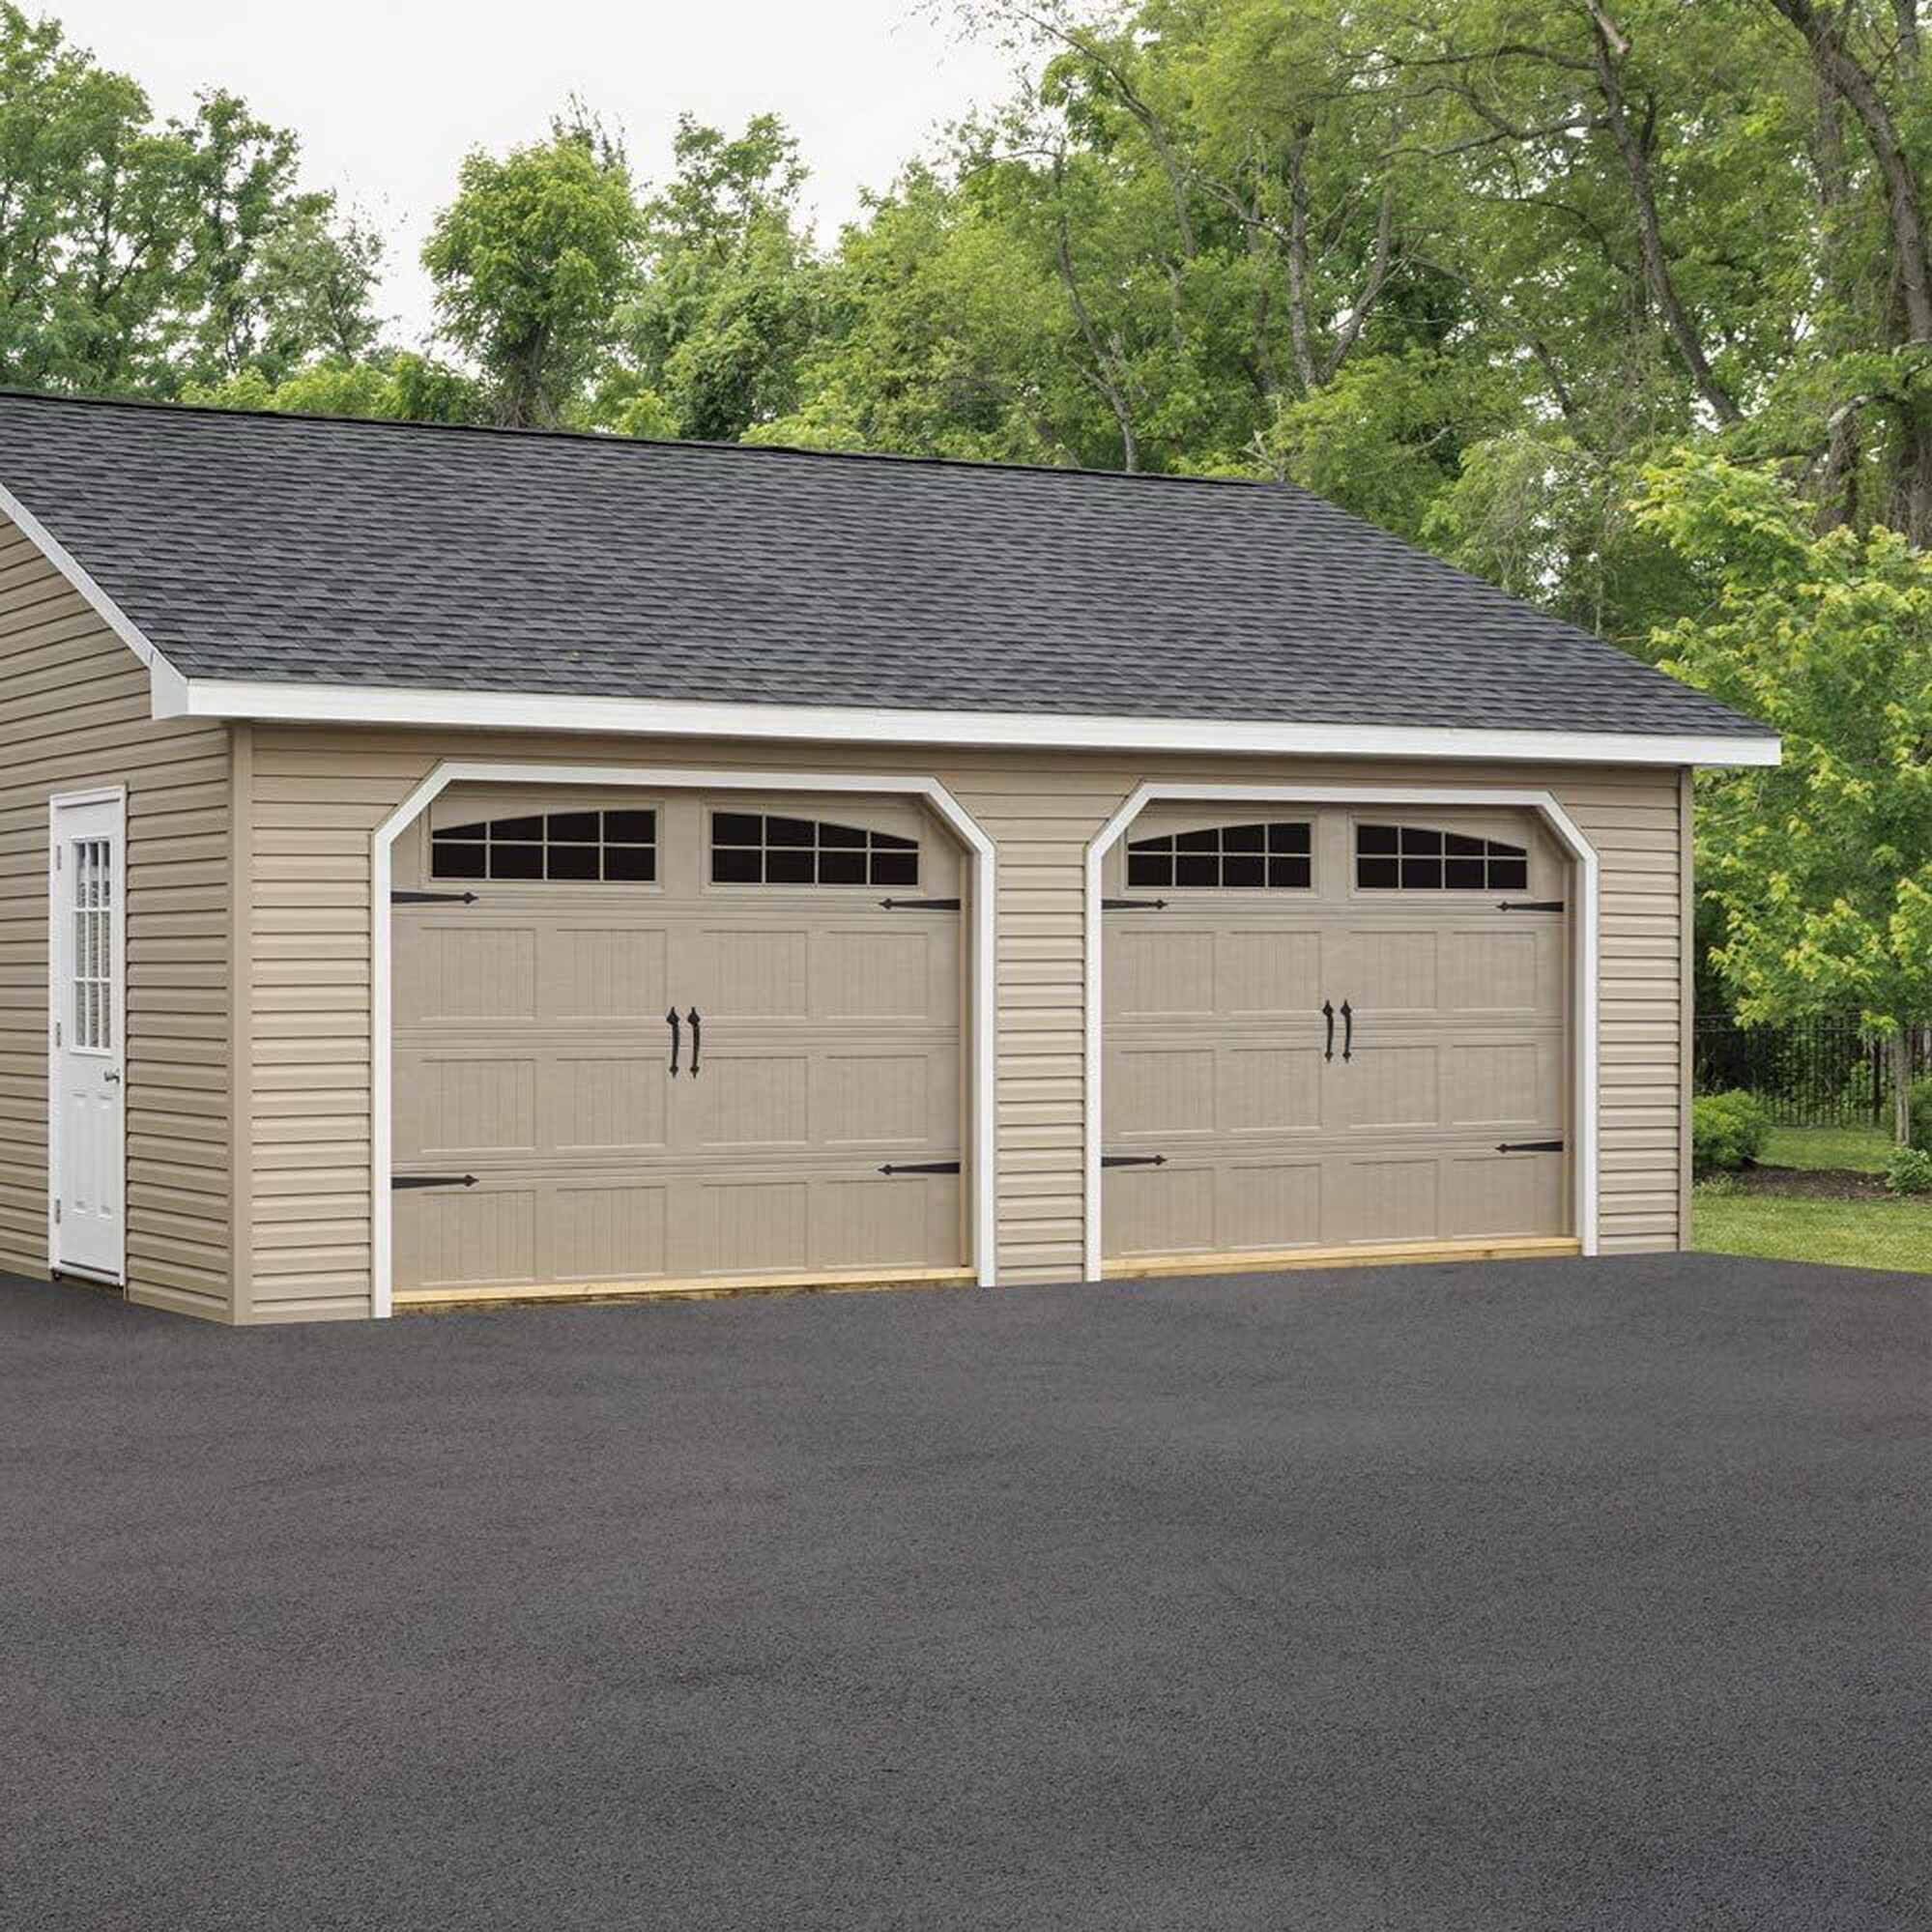 Interior and Exterior Handles for Garage Doors Garage Door Lift Handle Set 